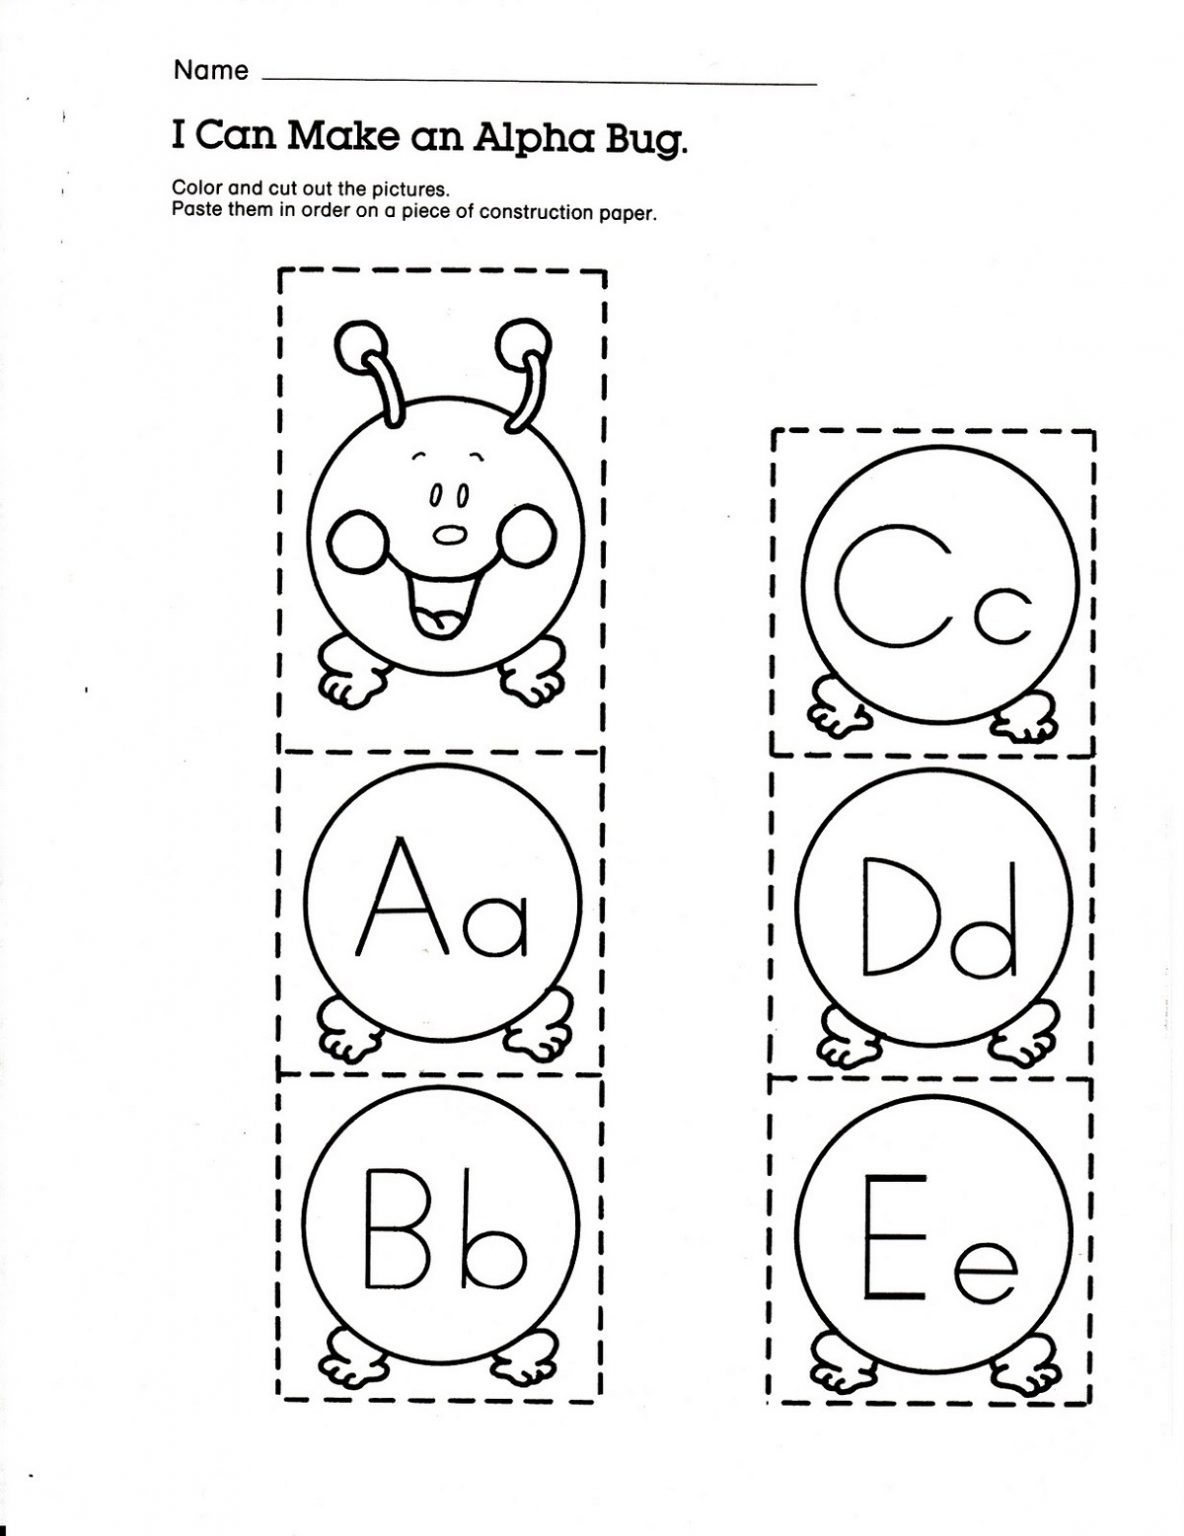 6-best-images-of-printable-preschool-worksheets-letter-e-letter-e